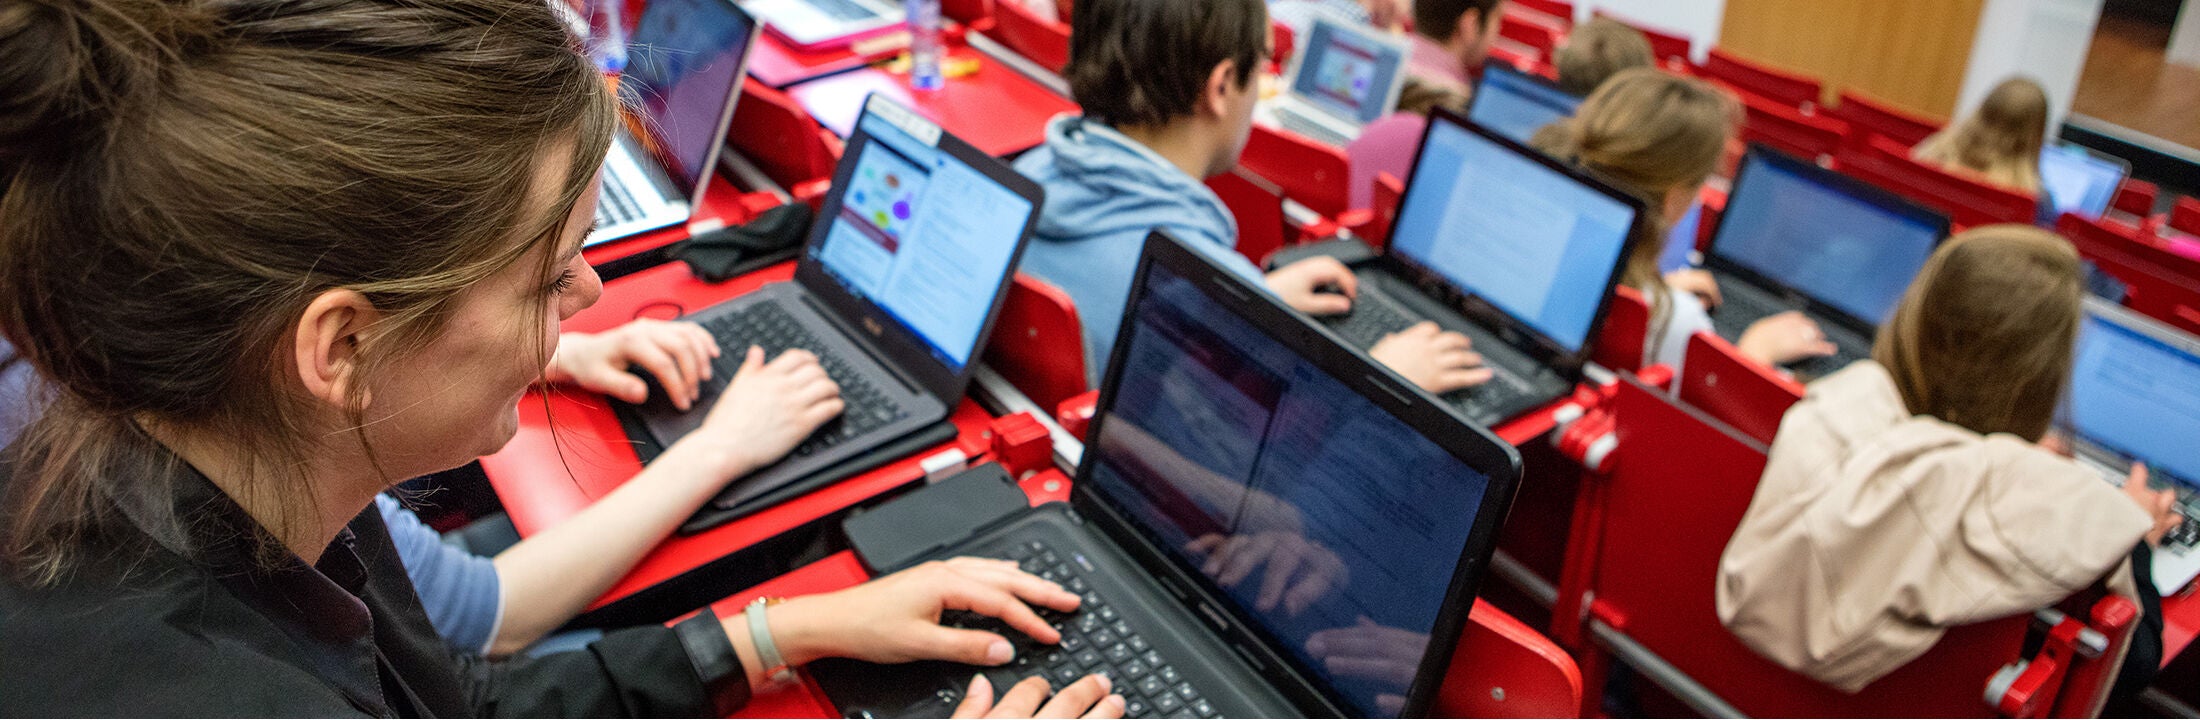 Studenten achter hun laptops in een collegezaal